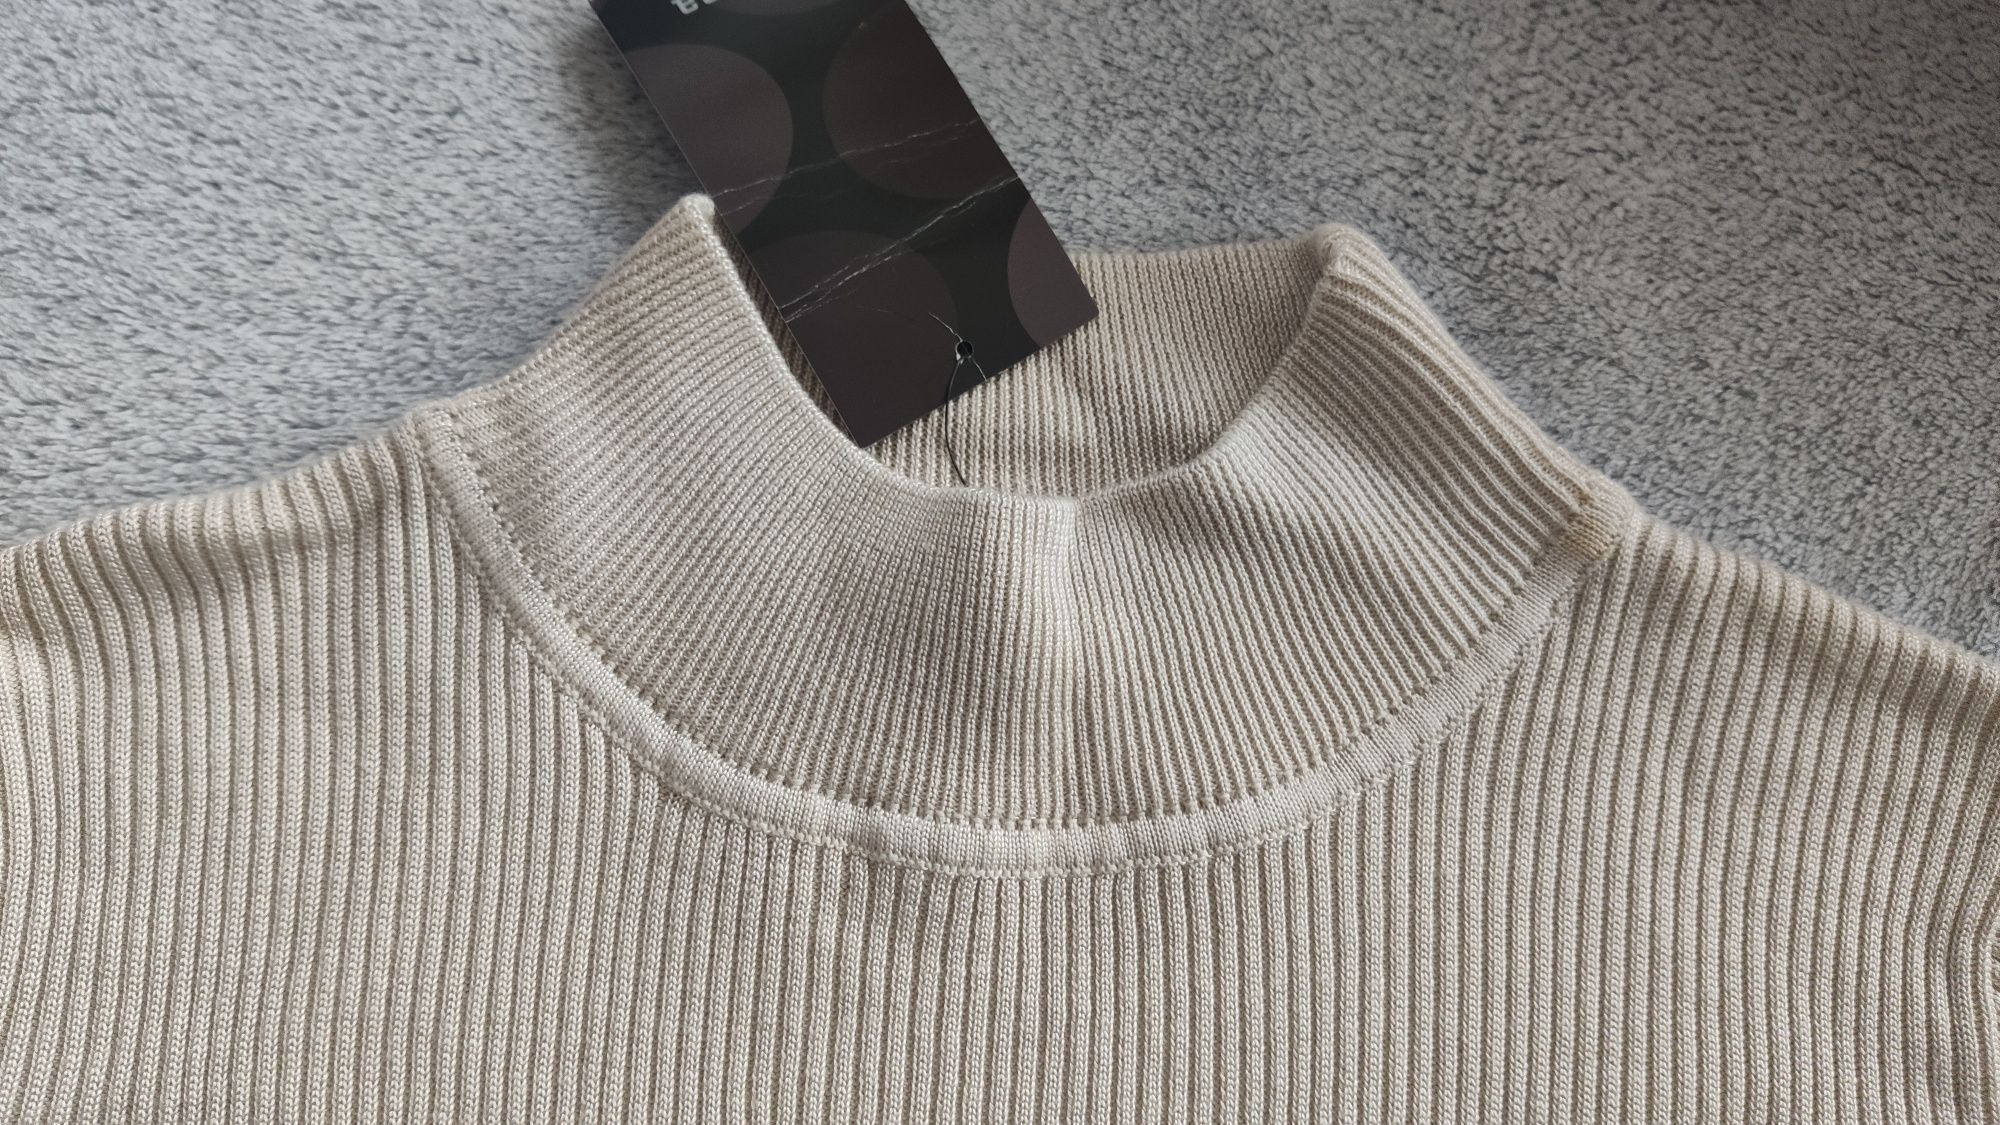 Bluzka ze stójką, półgolf sweterek